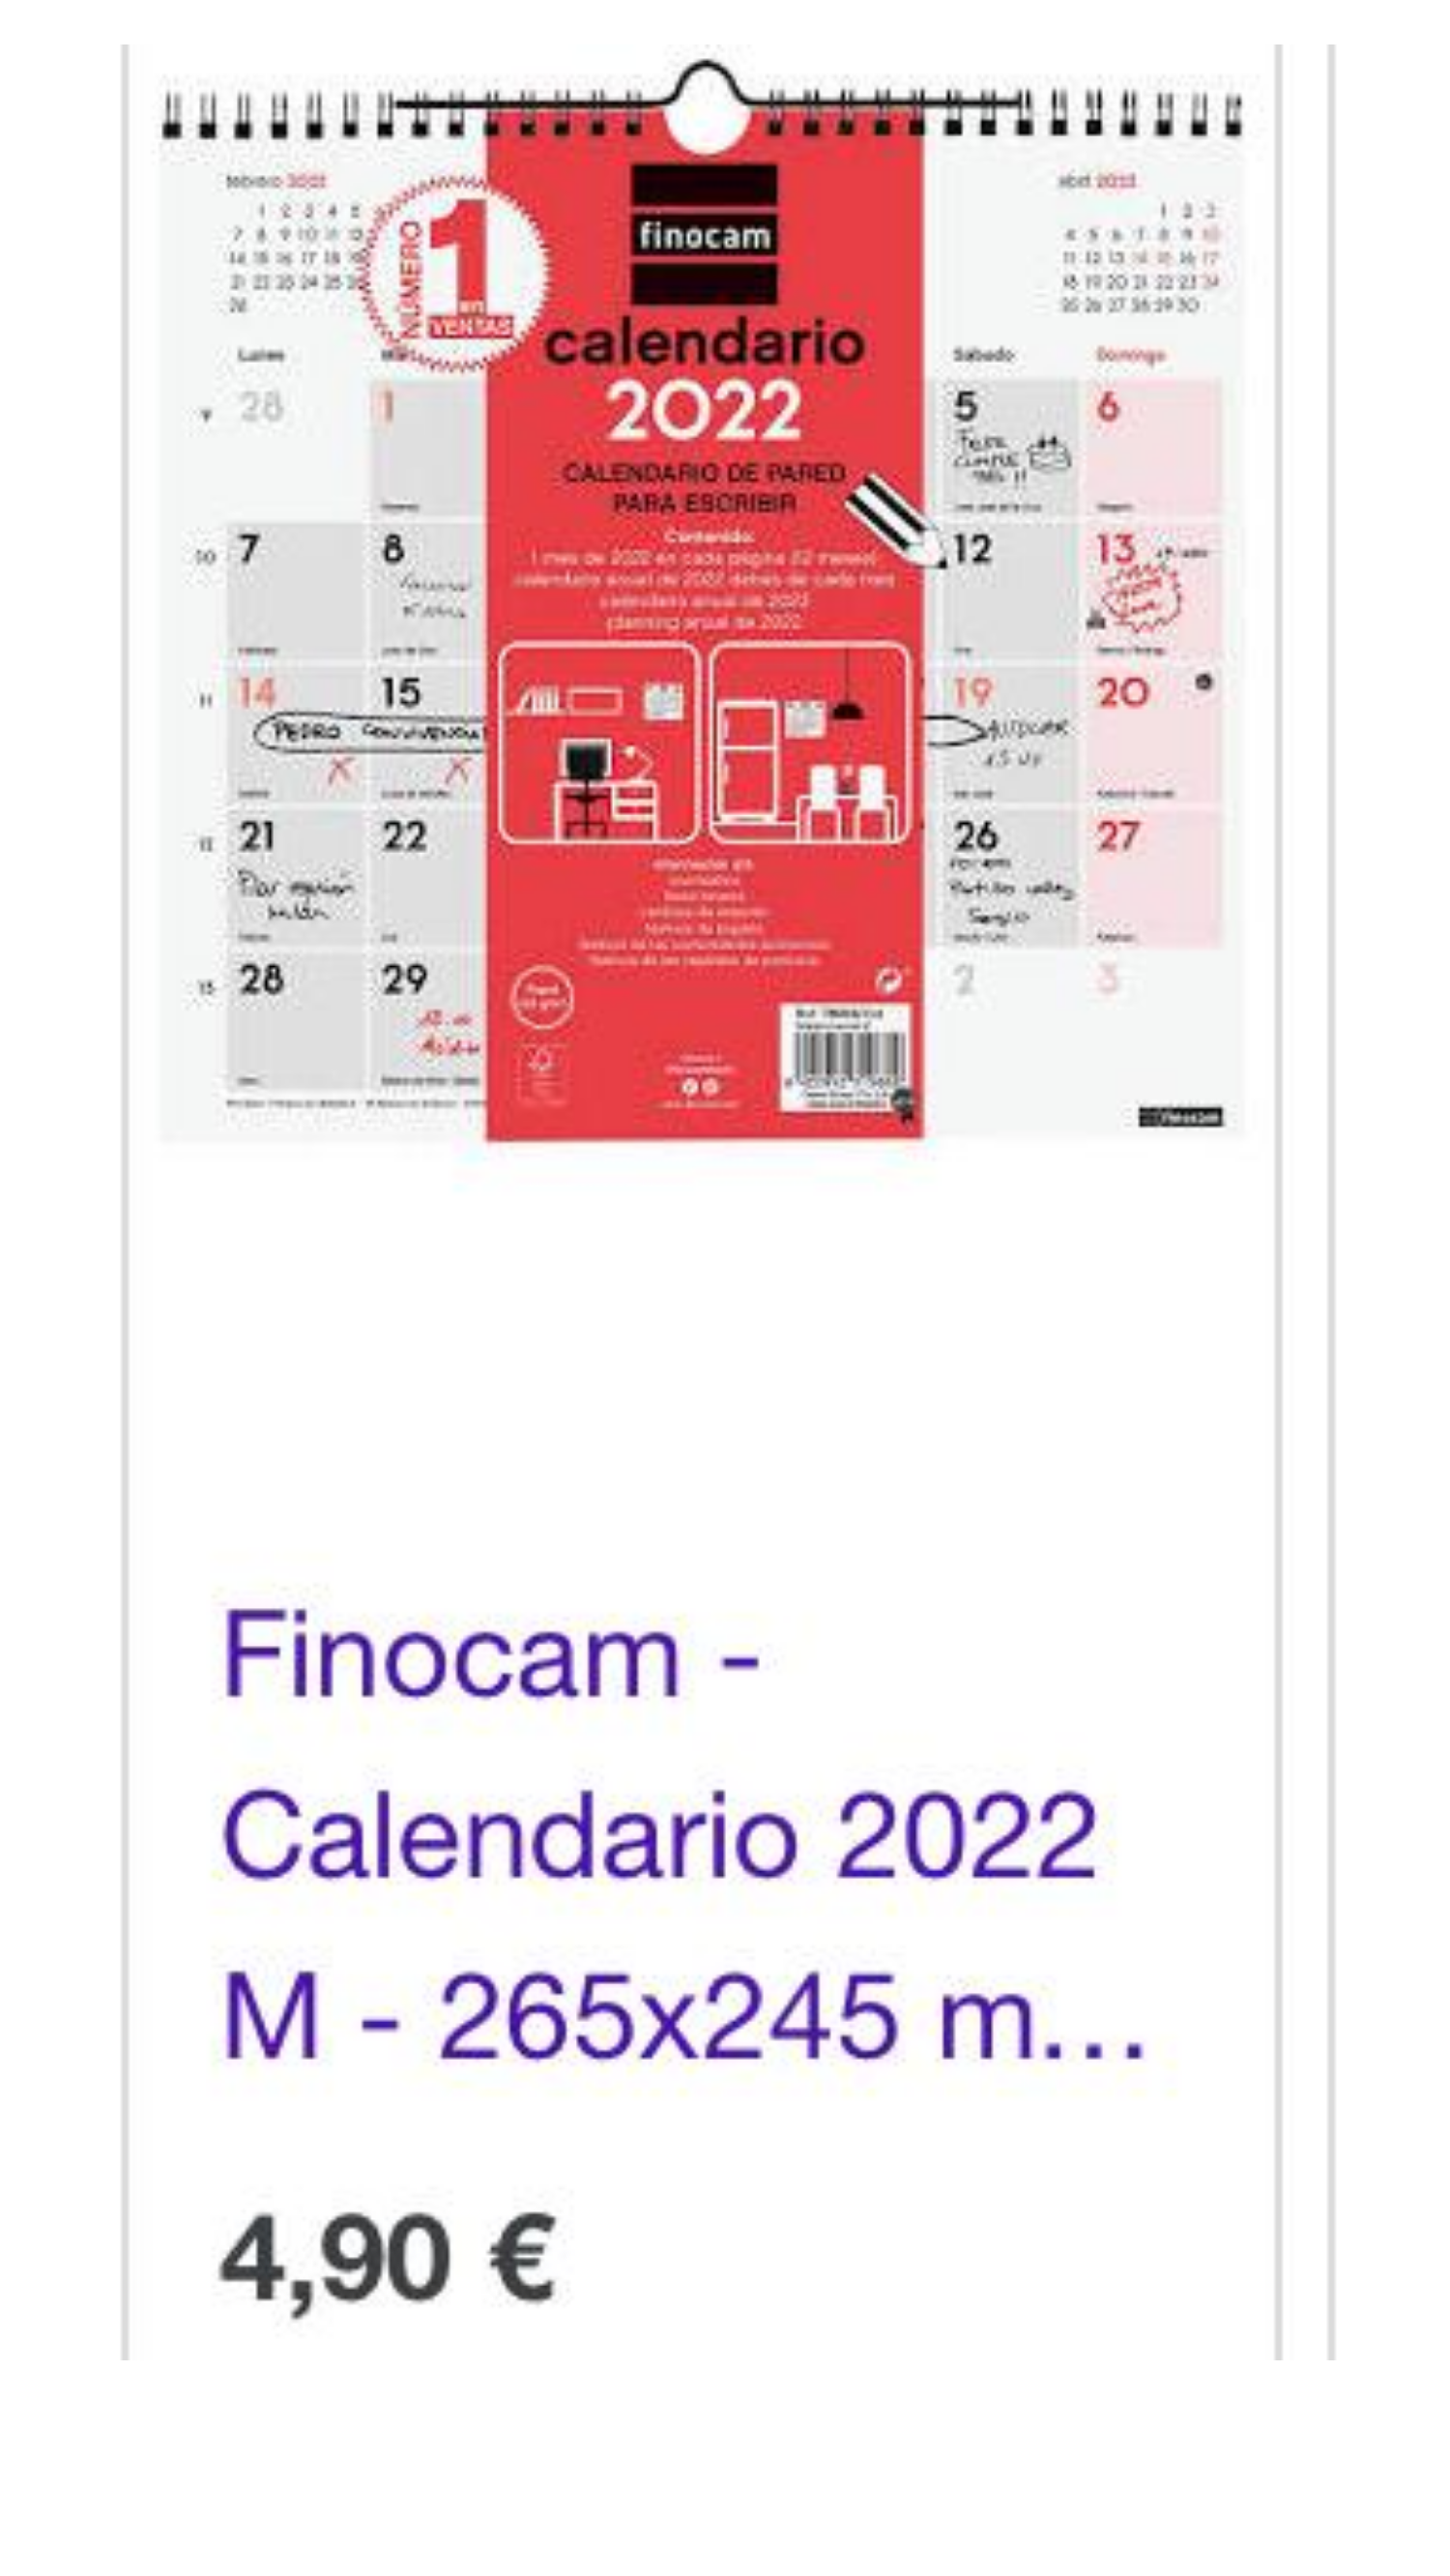 Finocam-calendario 2022